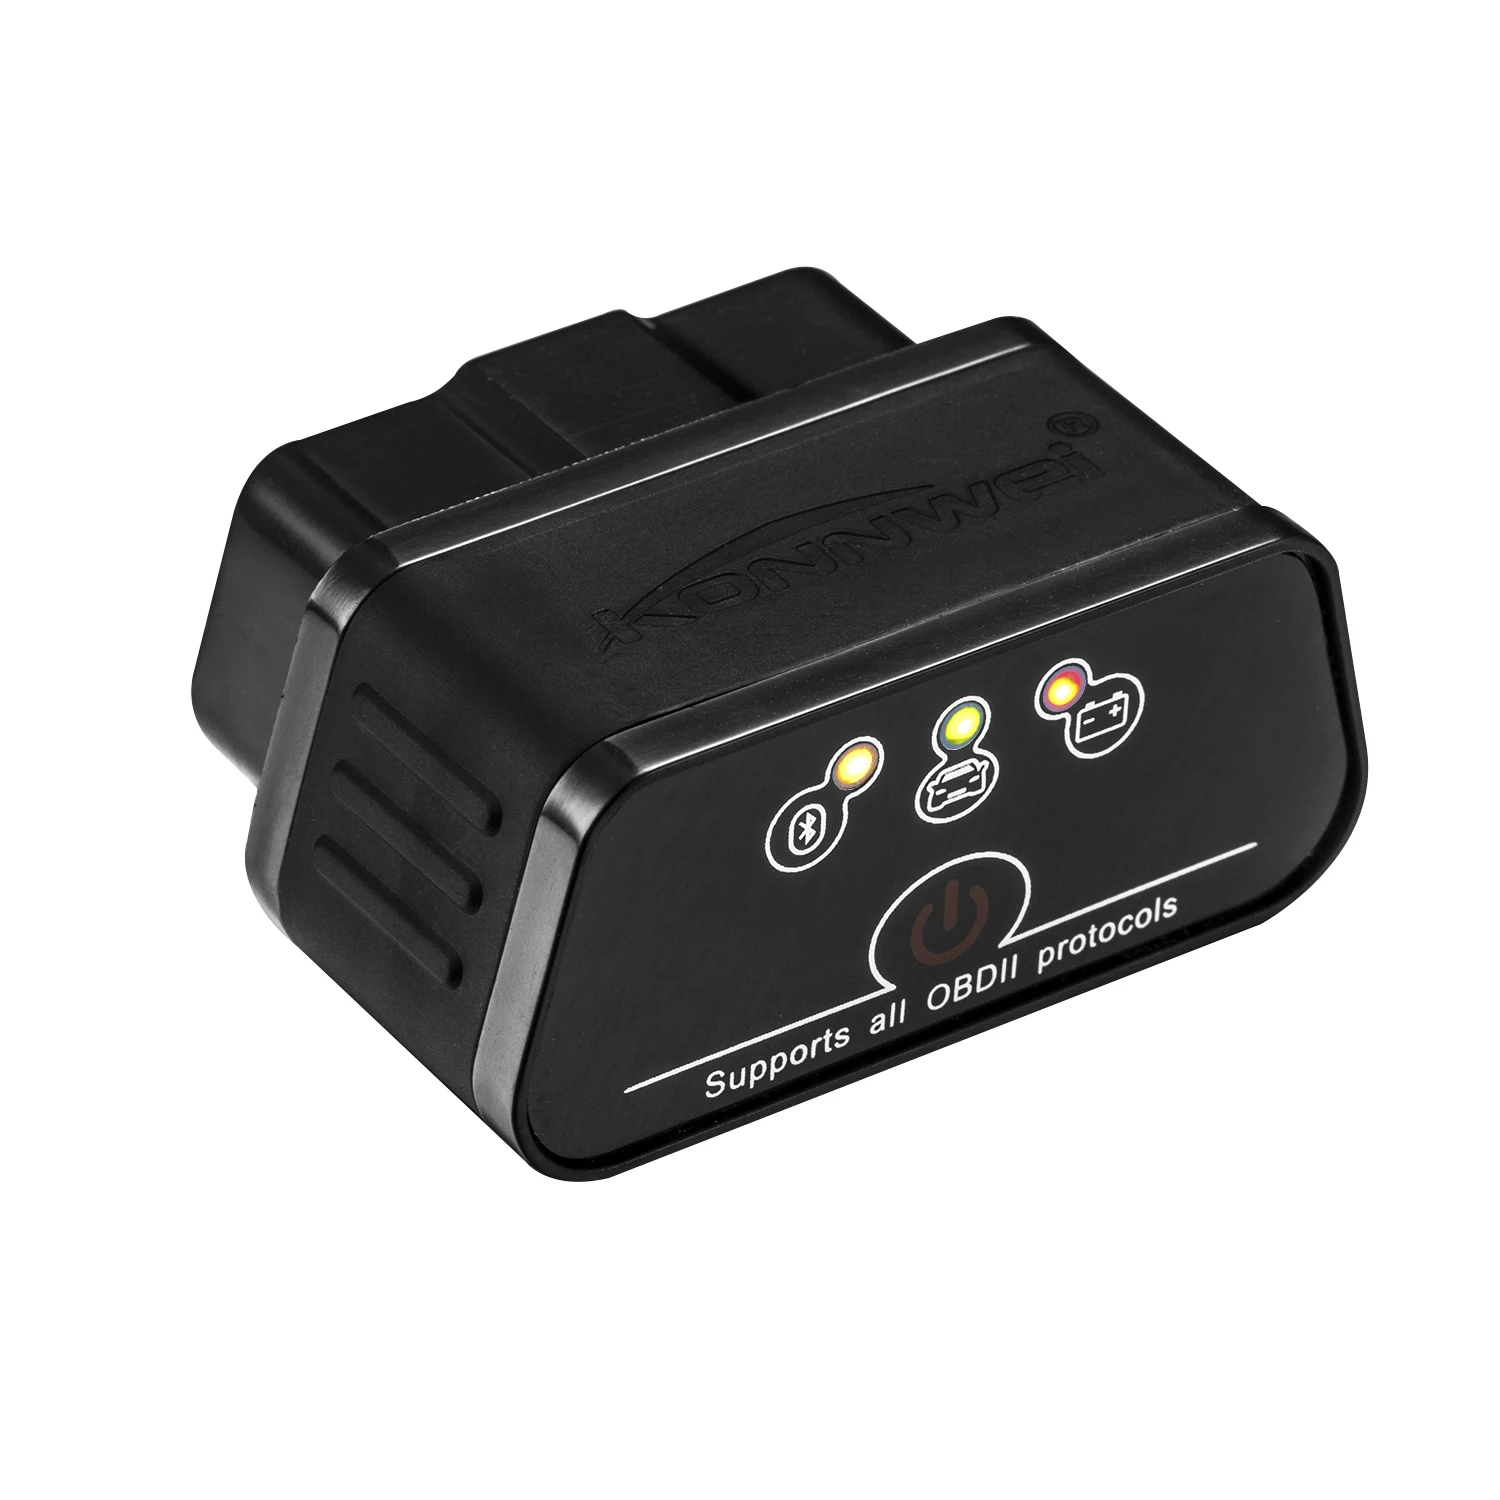 KW903 Мини ELM327 3,0 Bluetooth OBD2 код сканер диагностический инструмент s OBD2 код считыватель двигателя код ошибки Авто диагностический инструмент - Цвет: black